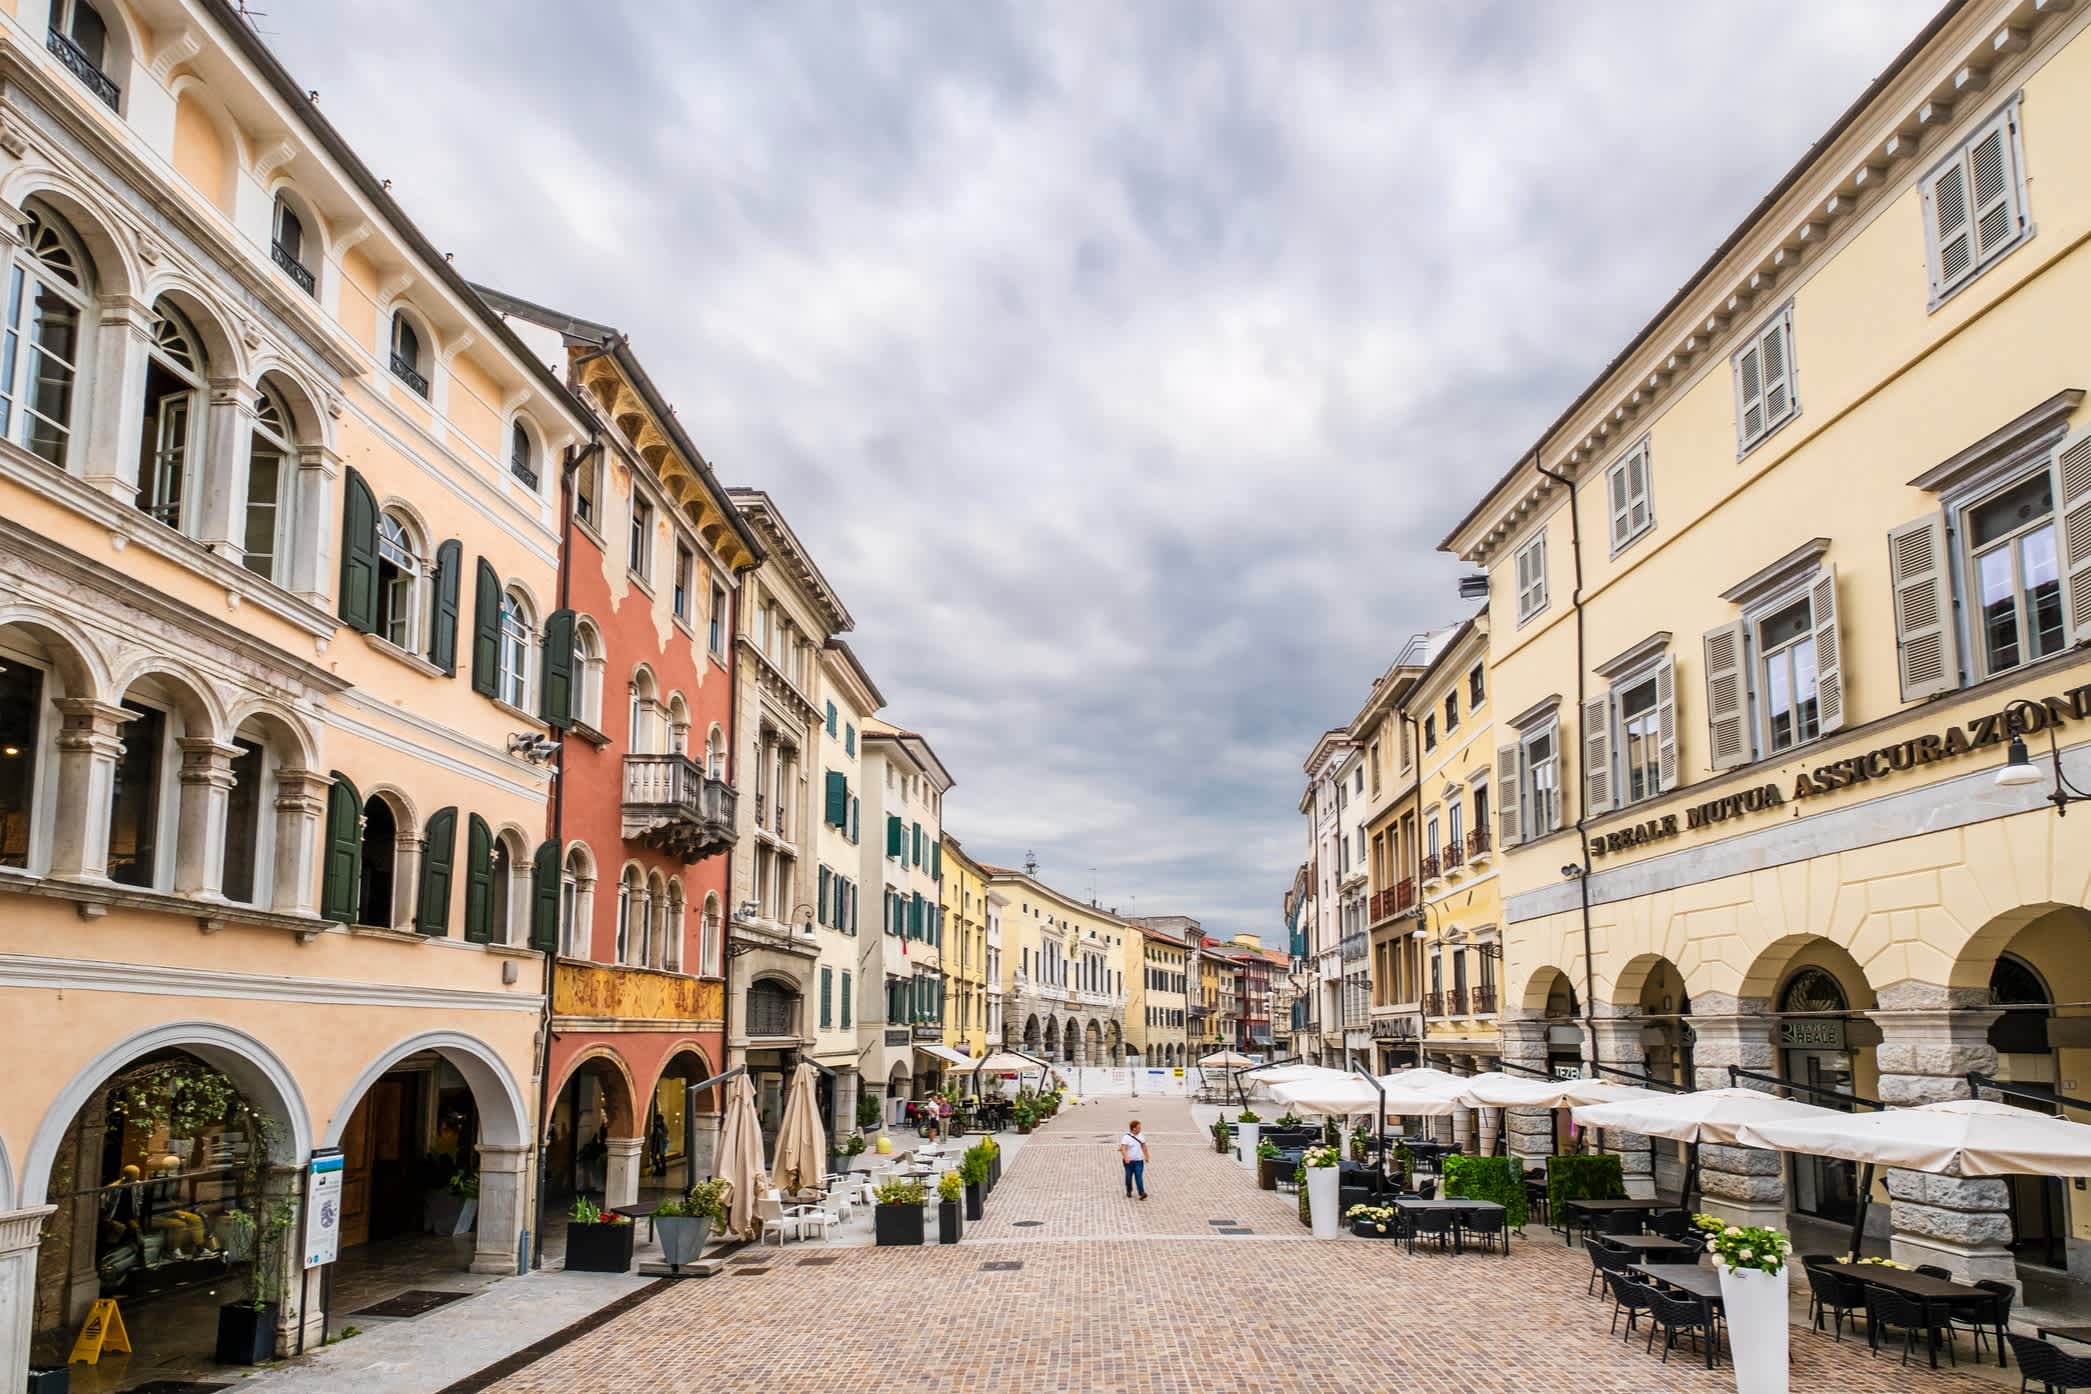 Historische Straße im Stadtkern Udines mit Bogengängen und Altbauten